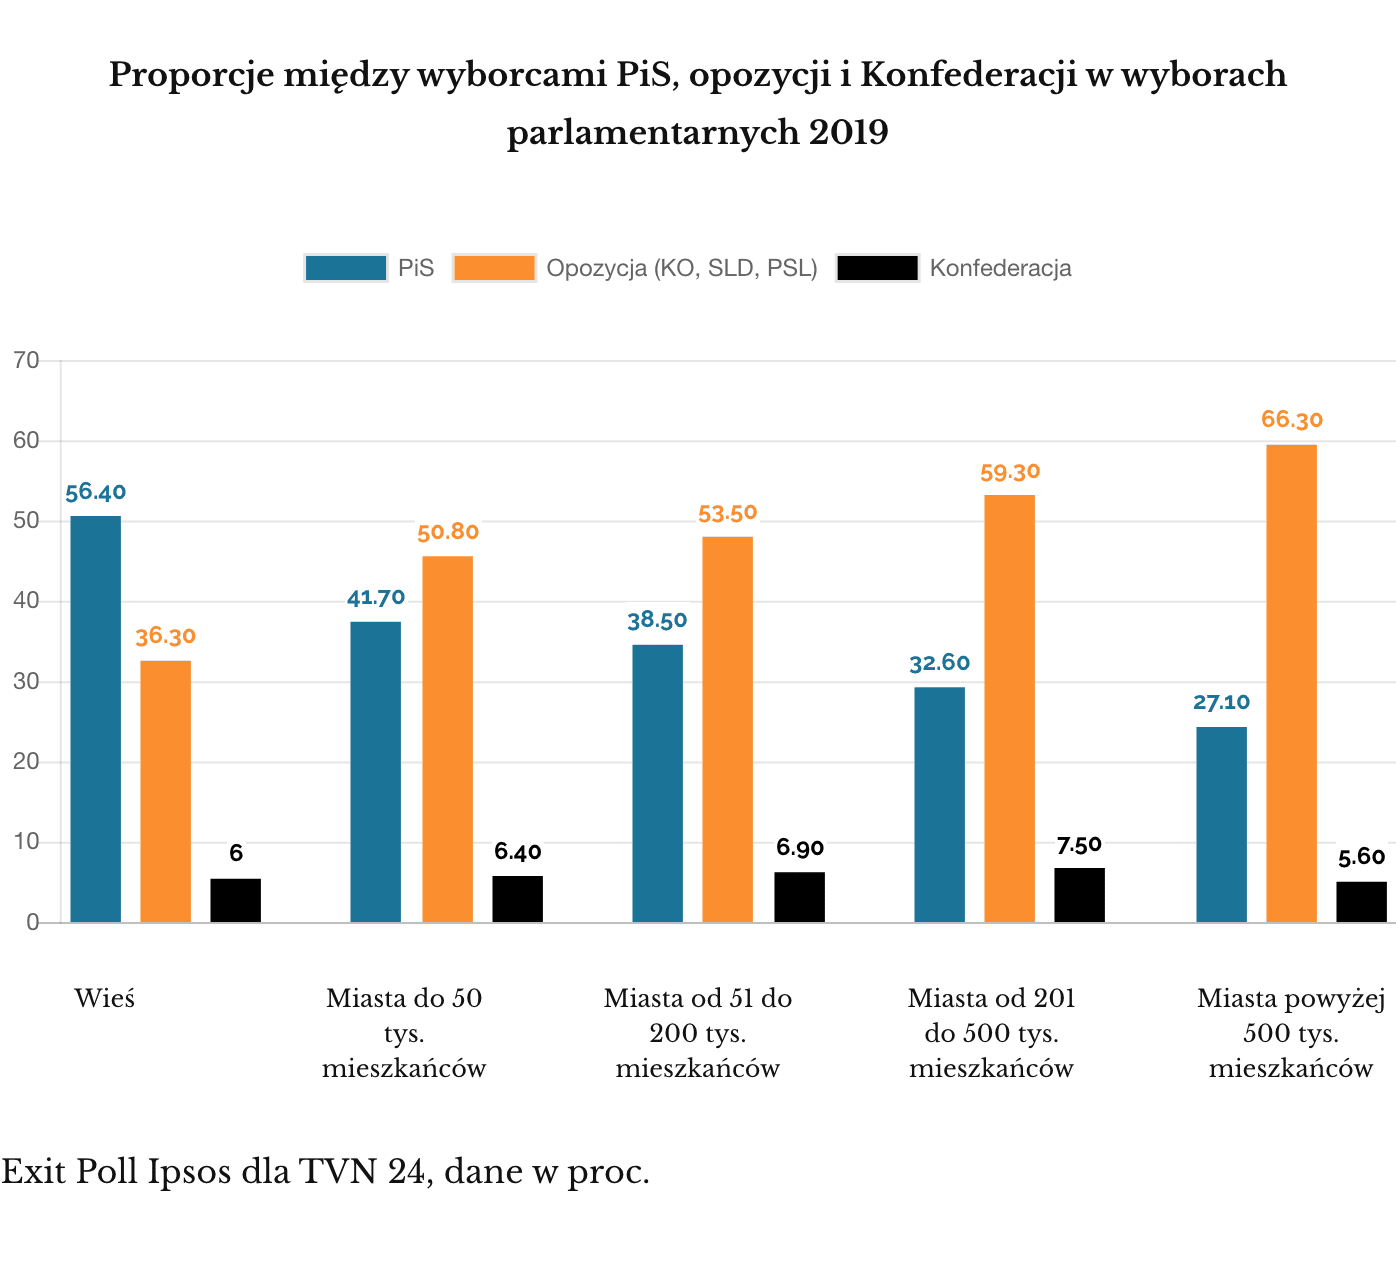 Exit Poll 2019: proporcje między PiS, opozycją i Konfederacją